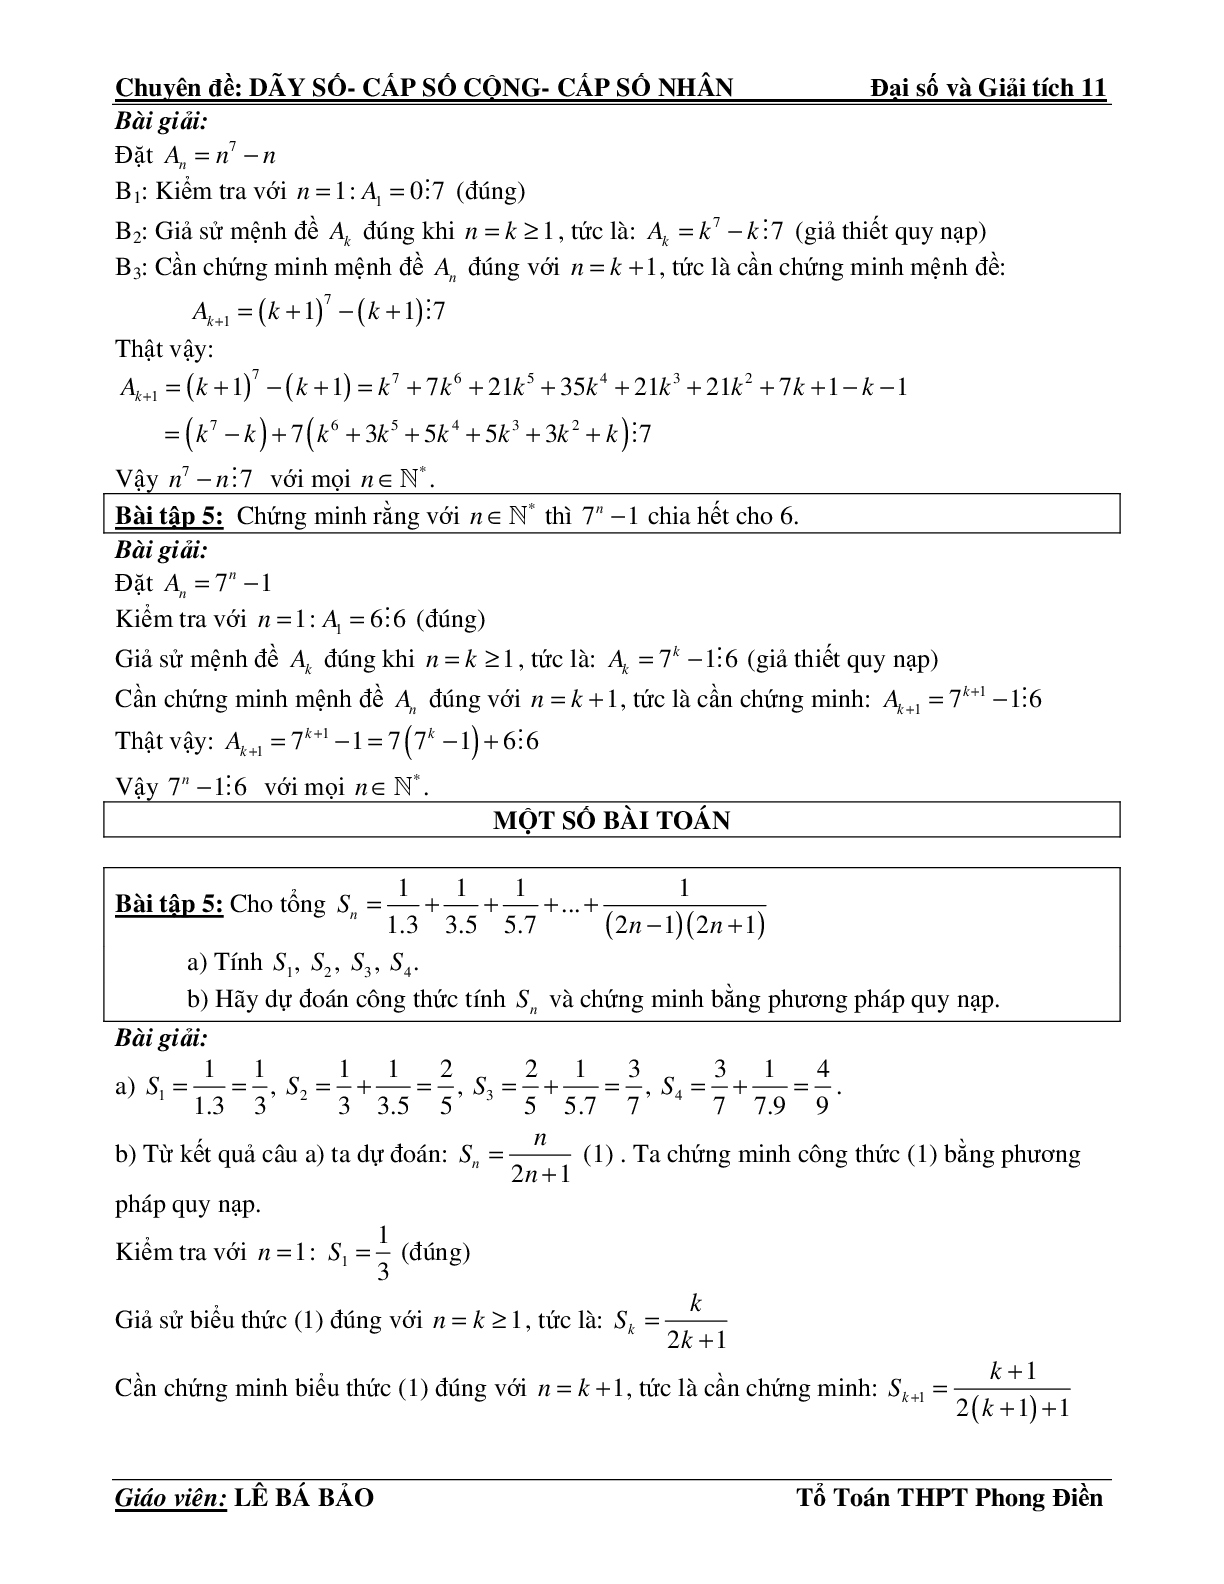 Bài tập phương pháp quy nạp toán học (trang 4)